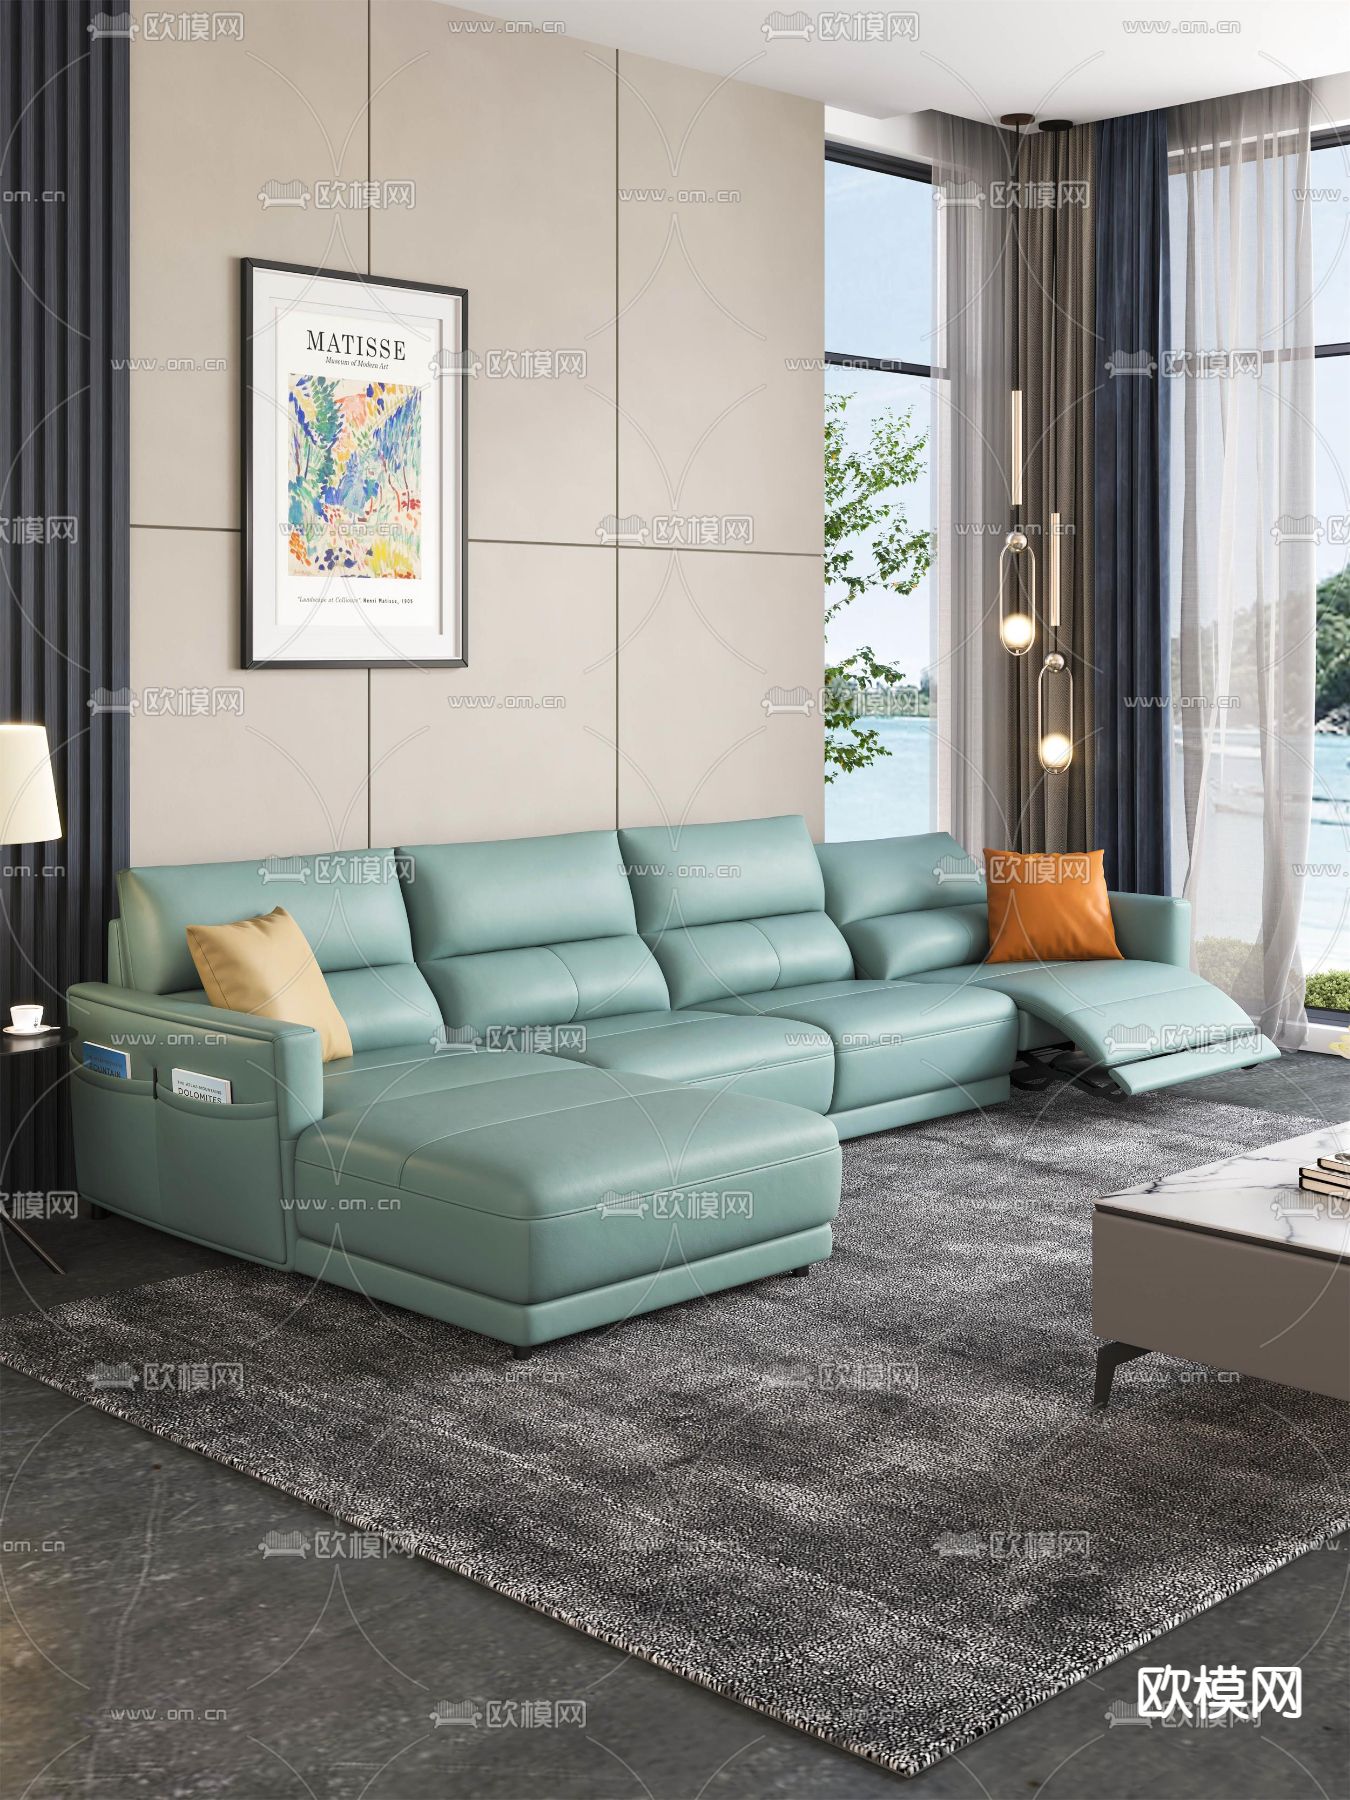 北欧布艺沙发 - 深蓝Blue设计效果图 - 每平每屋·设计家